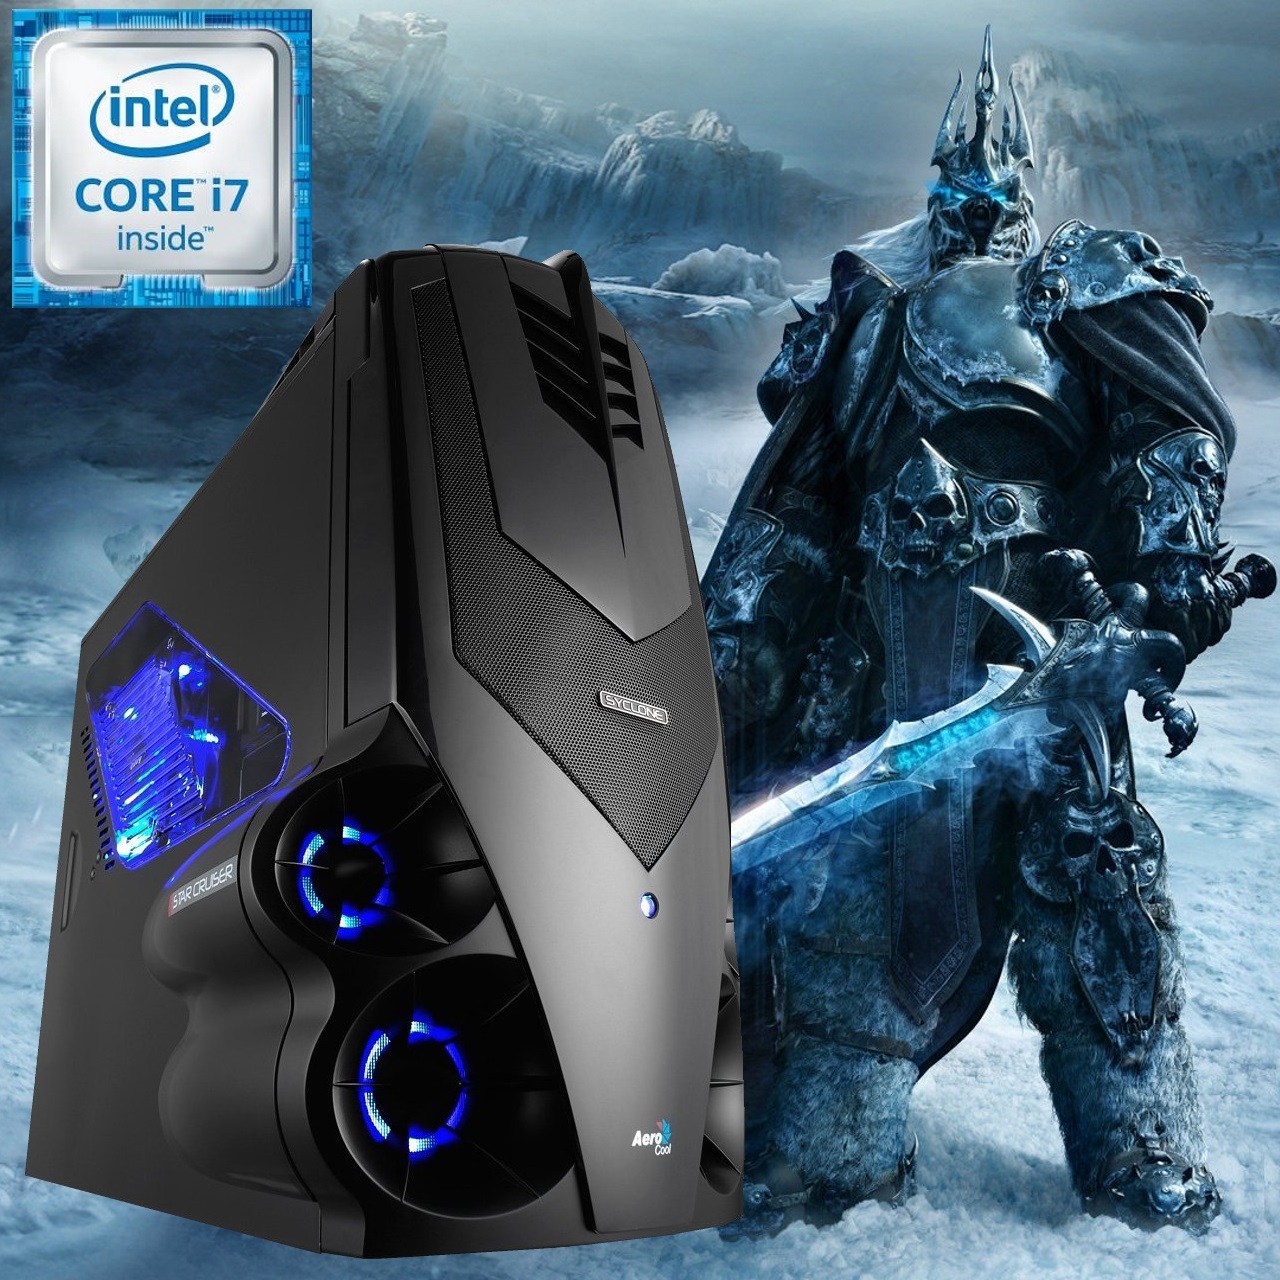 Игровой компьютер Воитель на базе процессора Intel® Core™ i7!